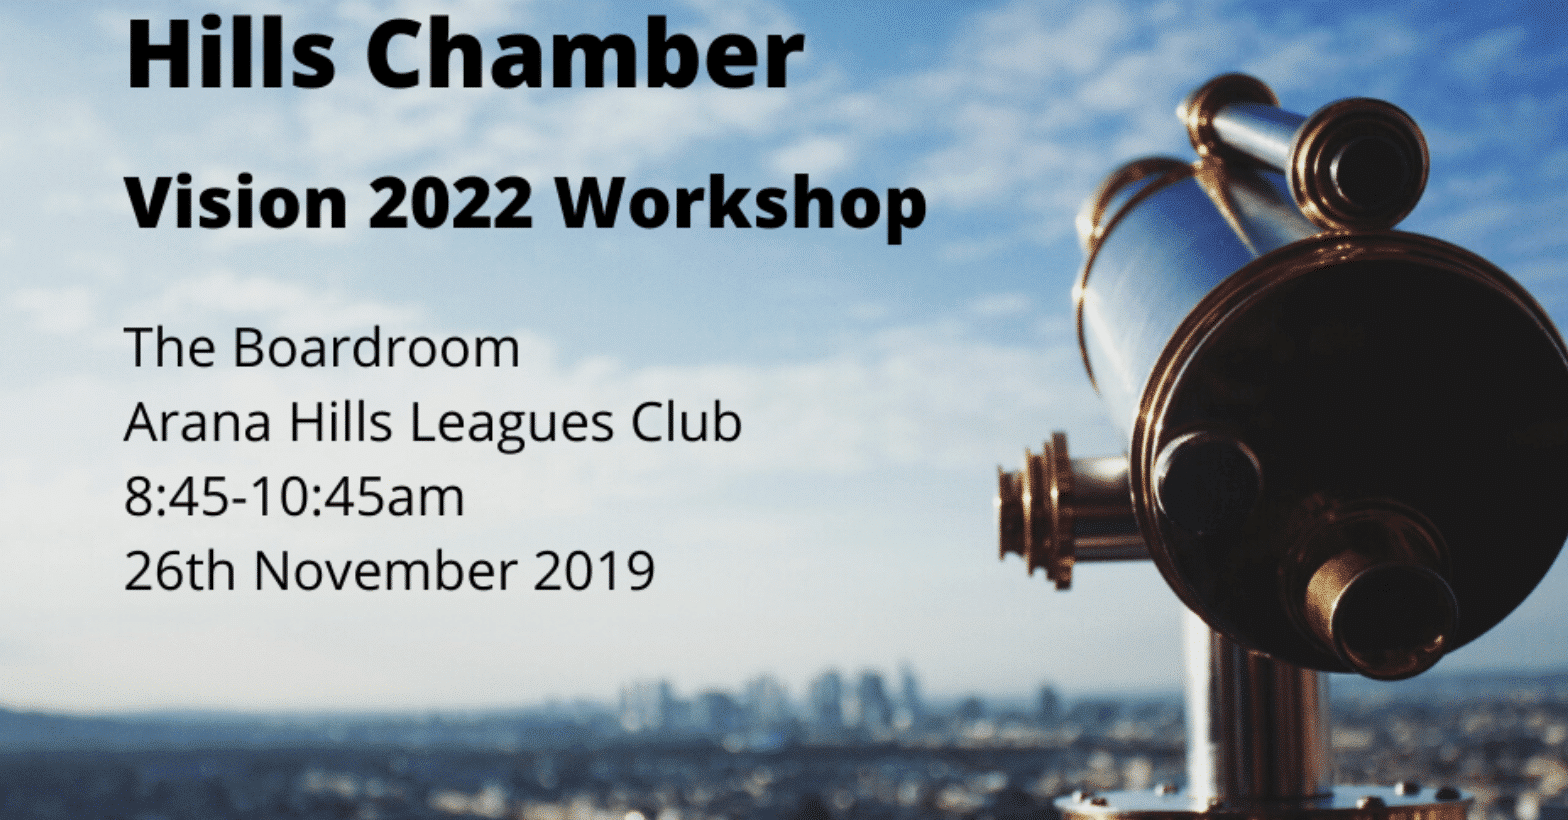 Hills Chamber Vision 2022 Workshop